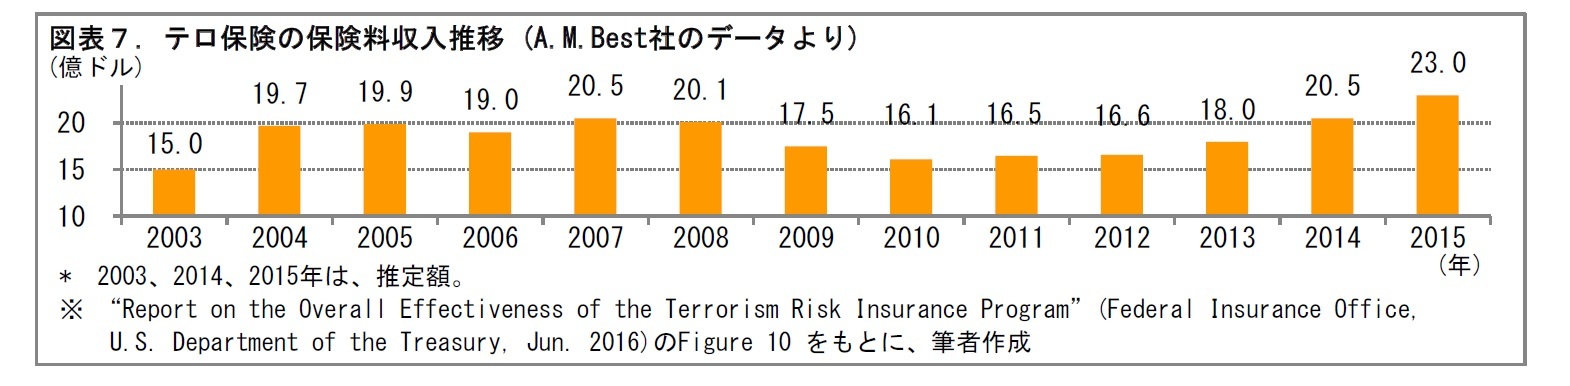 図表７. テロ保険の保険料収入推移 (A.M.Best社のデータより)